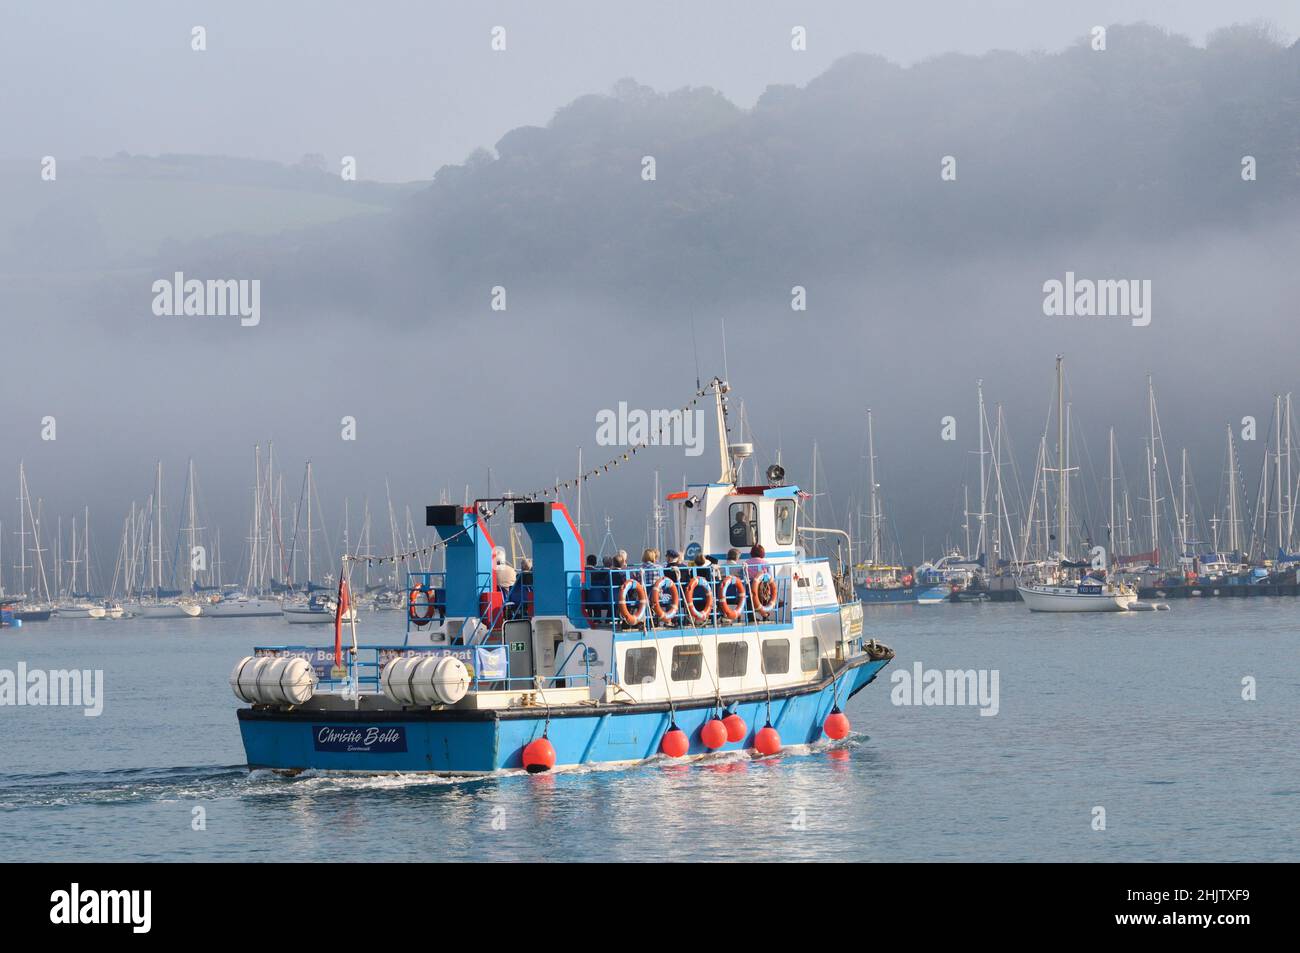 Persone a bordo di un traghetto passeggeri sul fiume Dart in una tranquilla mattinata di nebbia, quando il sole inizia a rompere attraverso la nebbia. Dartmouth, Devon, Inghilterra, Regno Unito Foto Stock